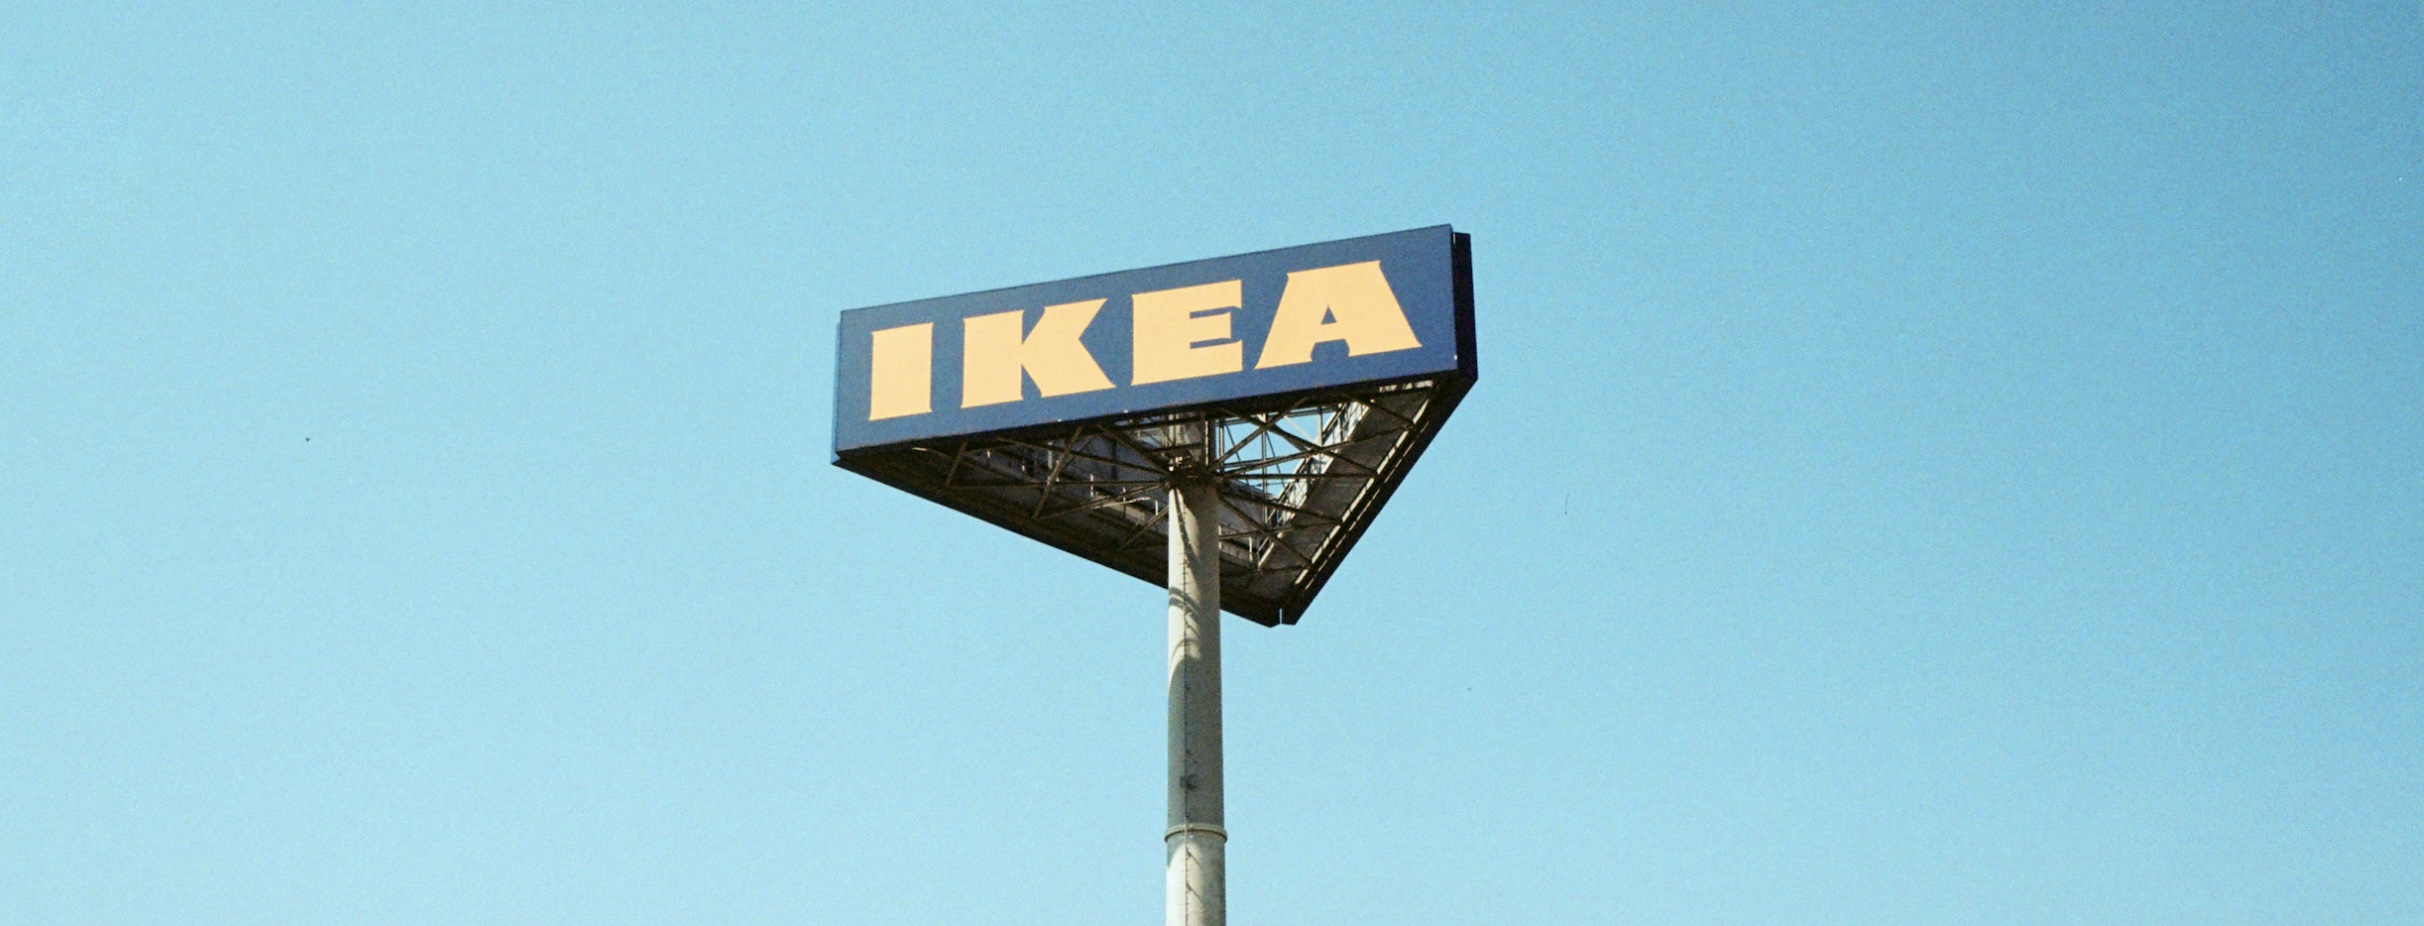 IKEA запретила использовать свое название в России: Роспатент согласился